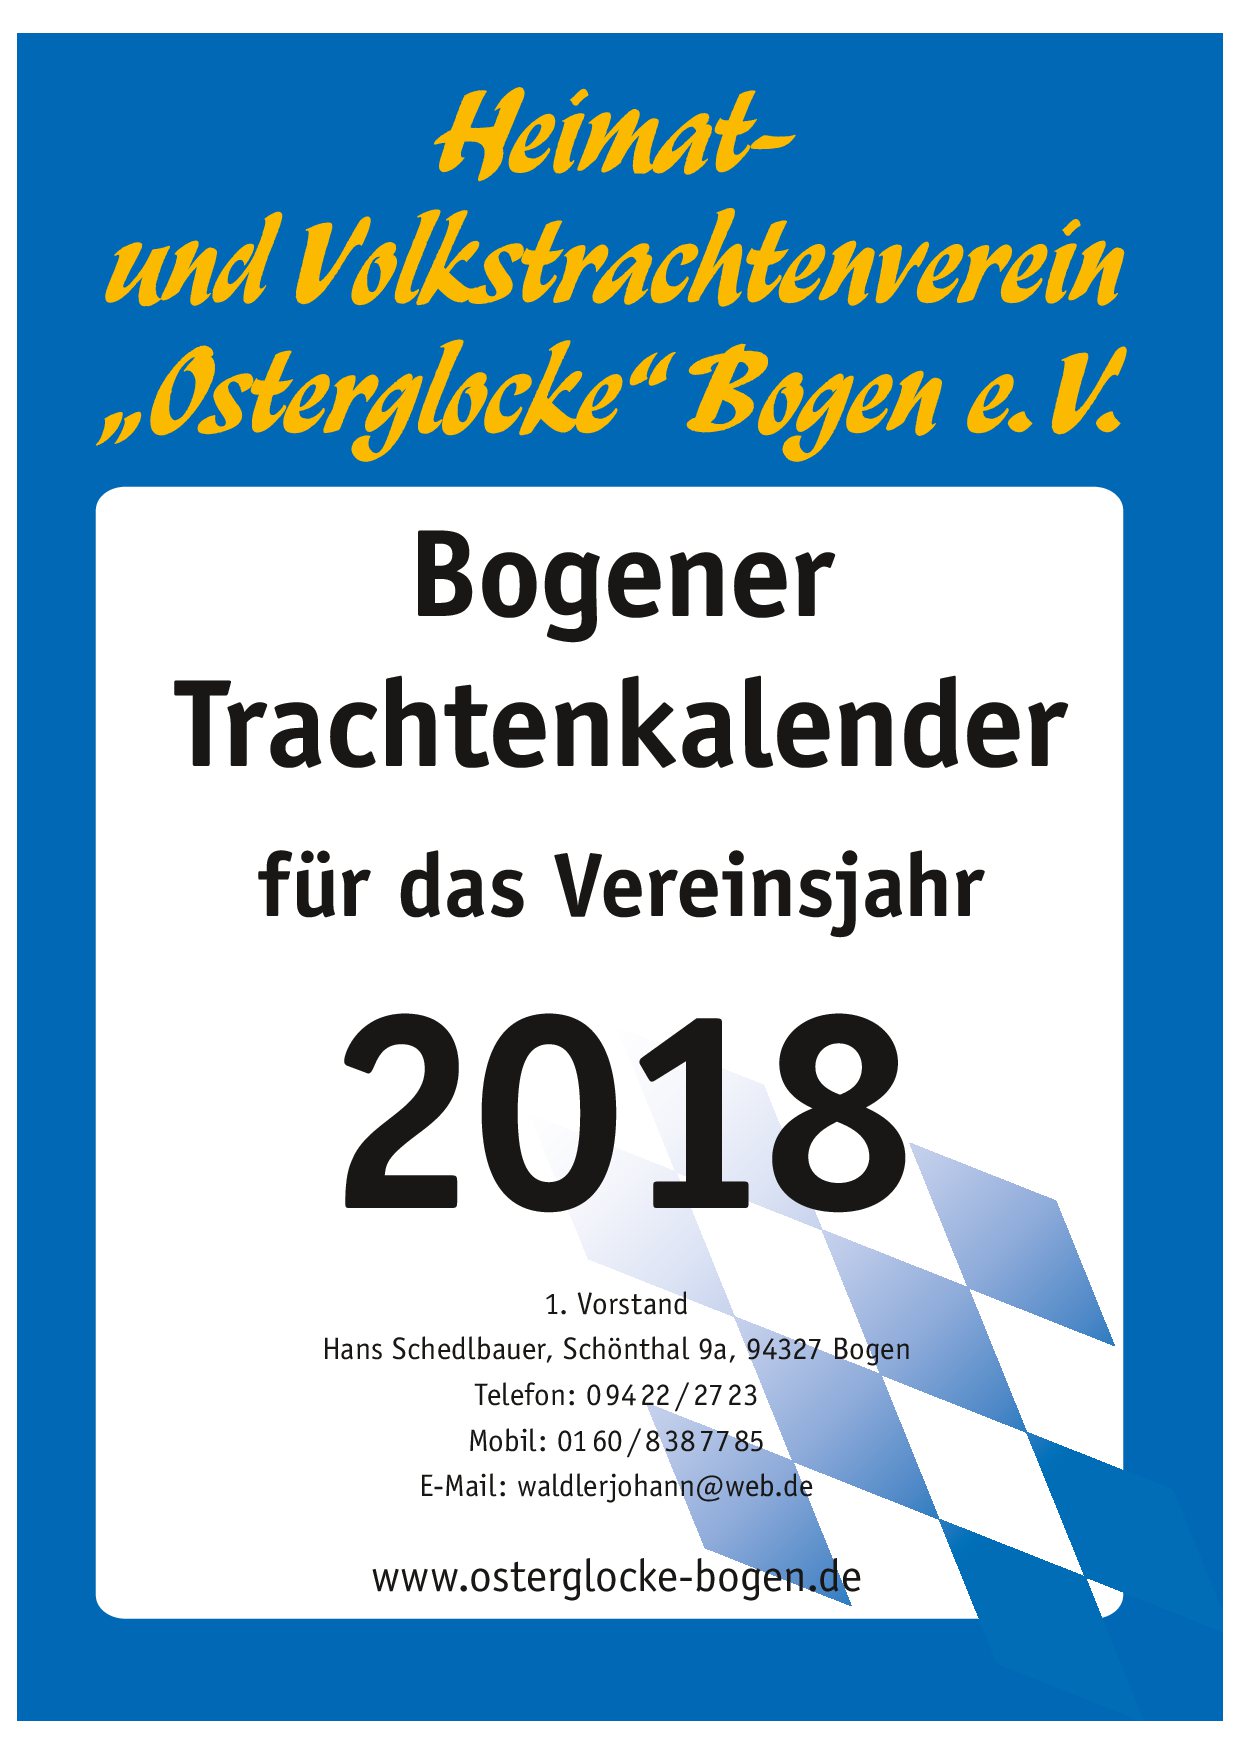 Bogener Trachtenkalender 2018 (Deckblatt)